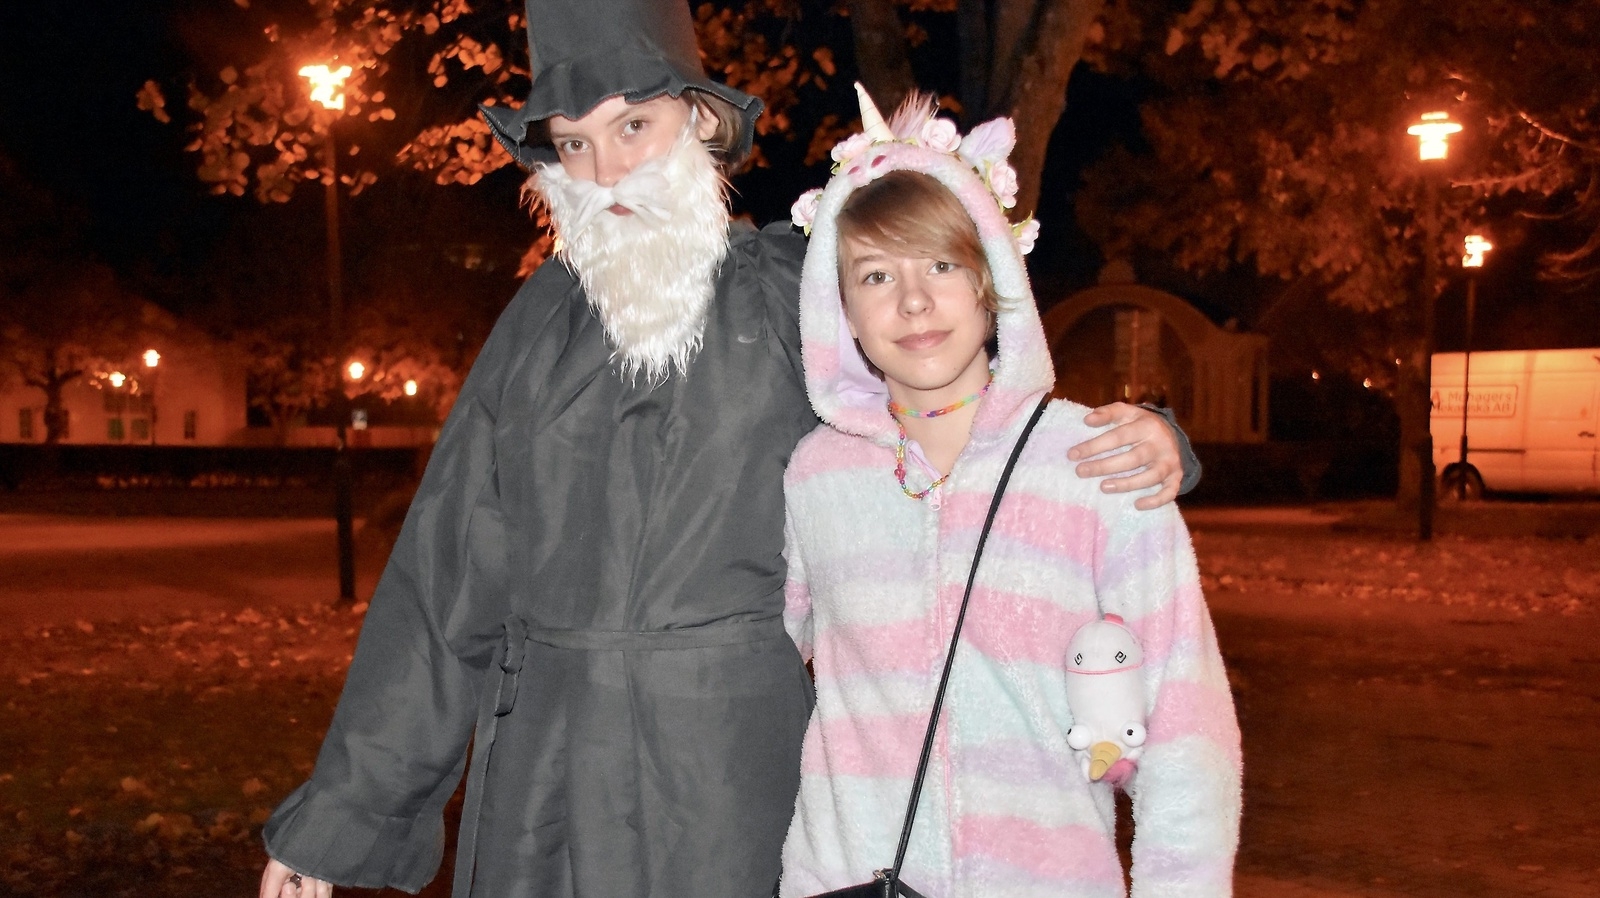 Halloweenparty på Markan. Alva Stenebo och Julia Stenebo.